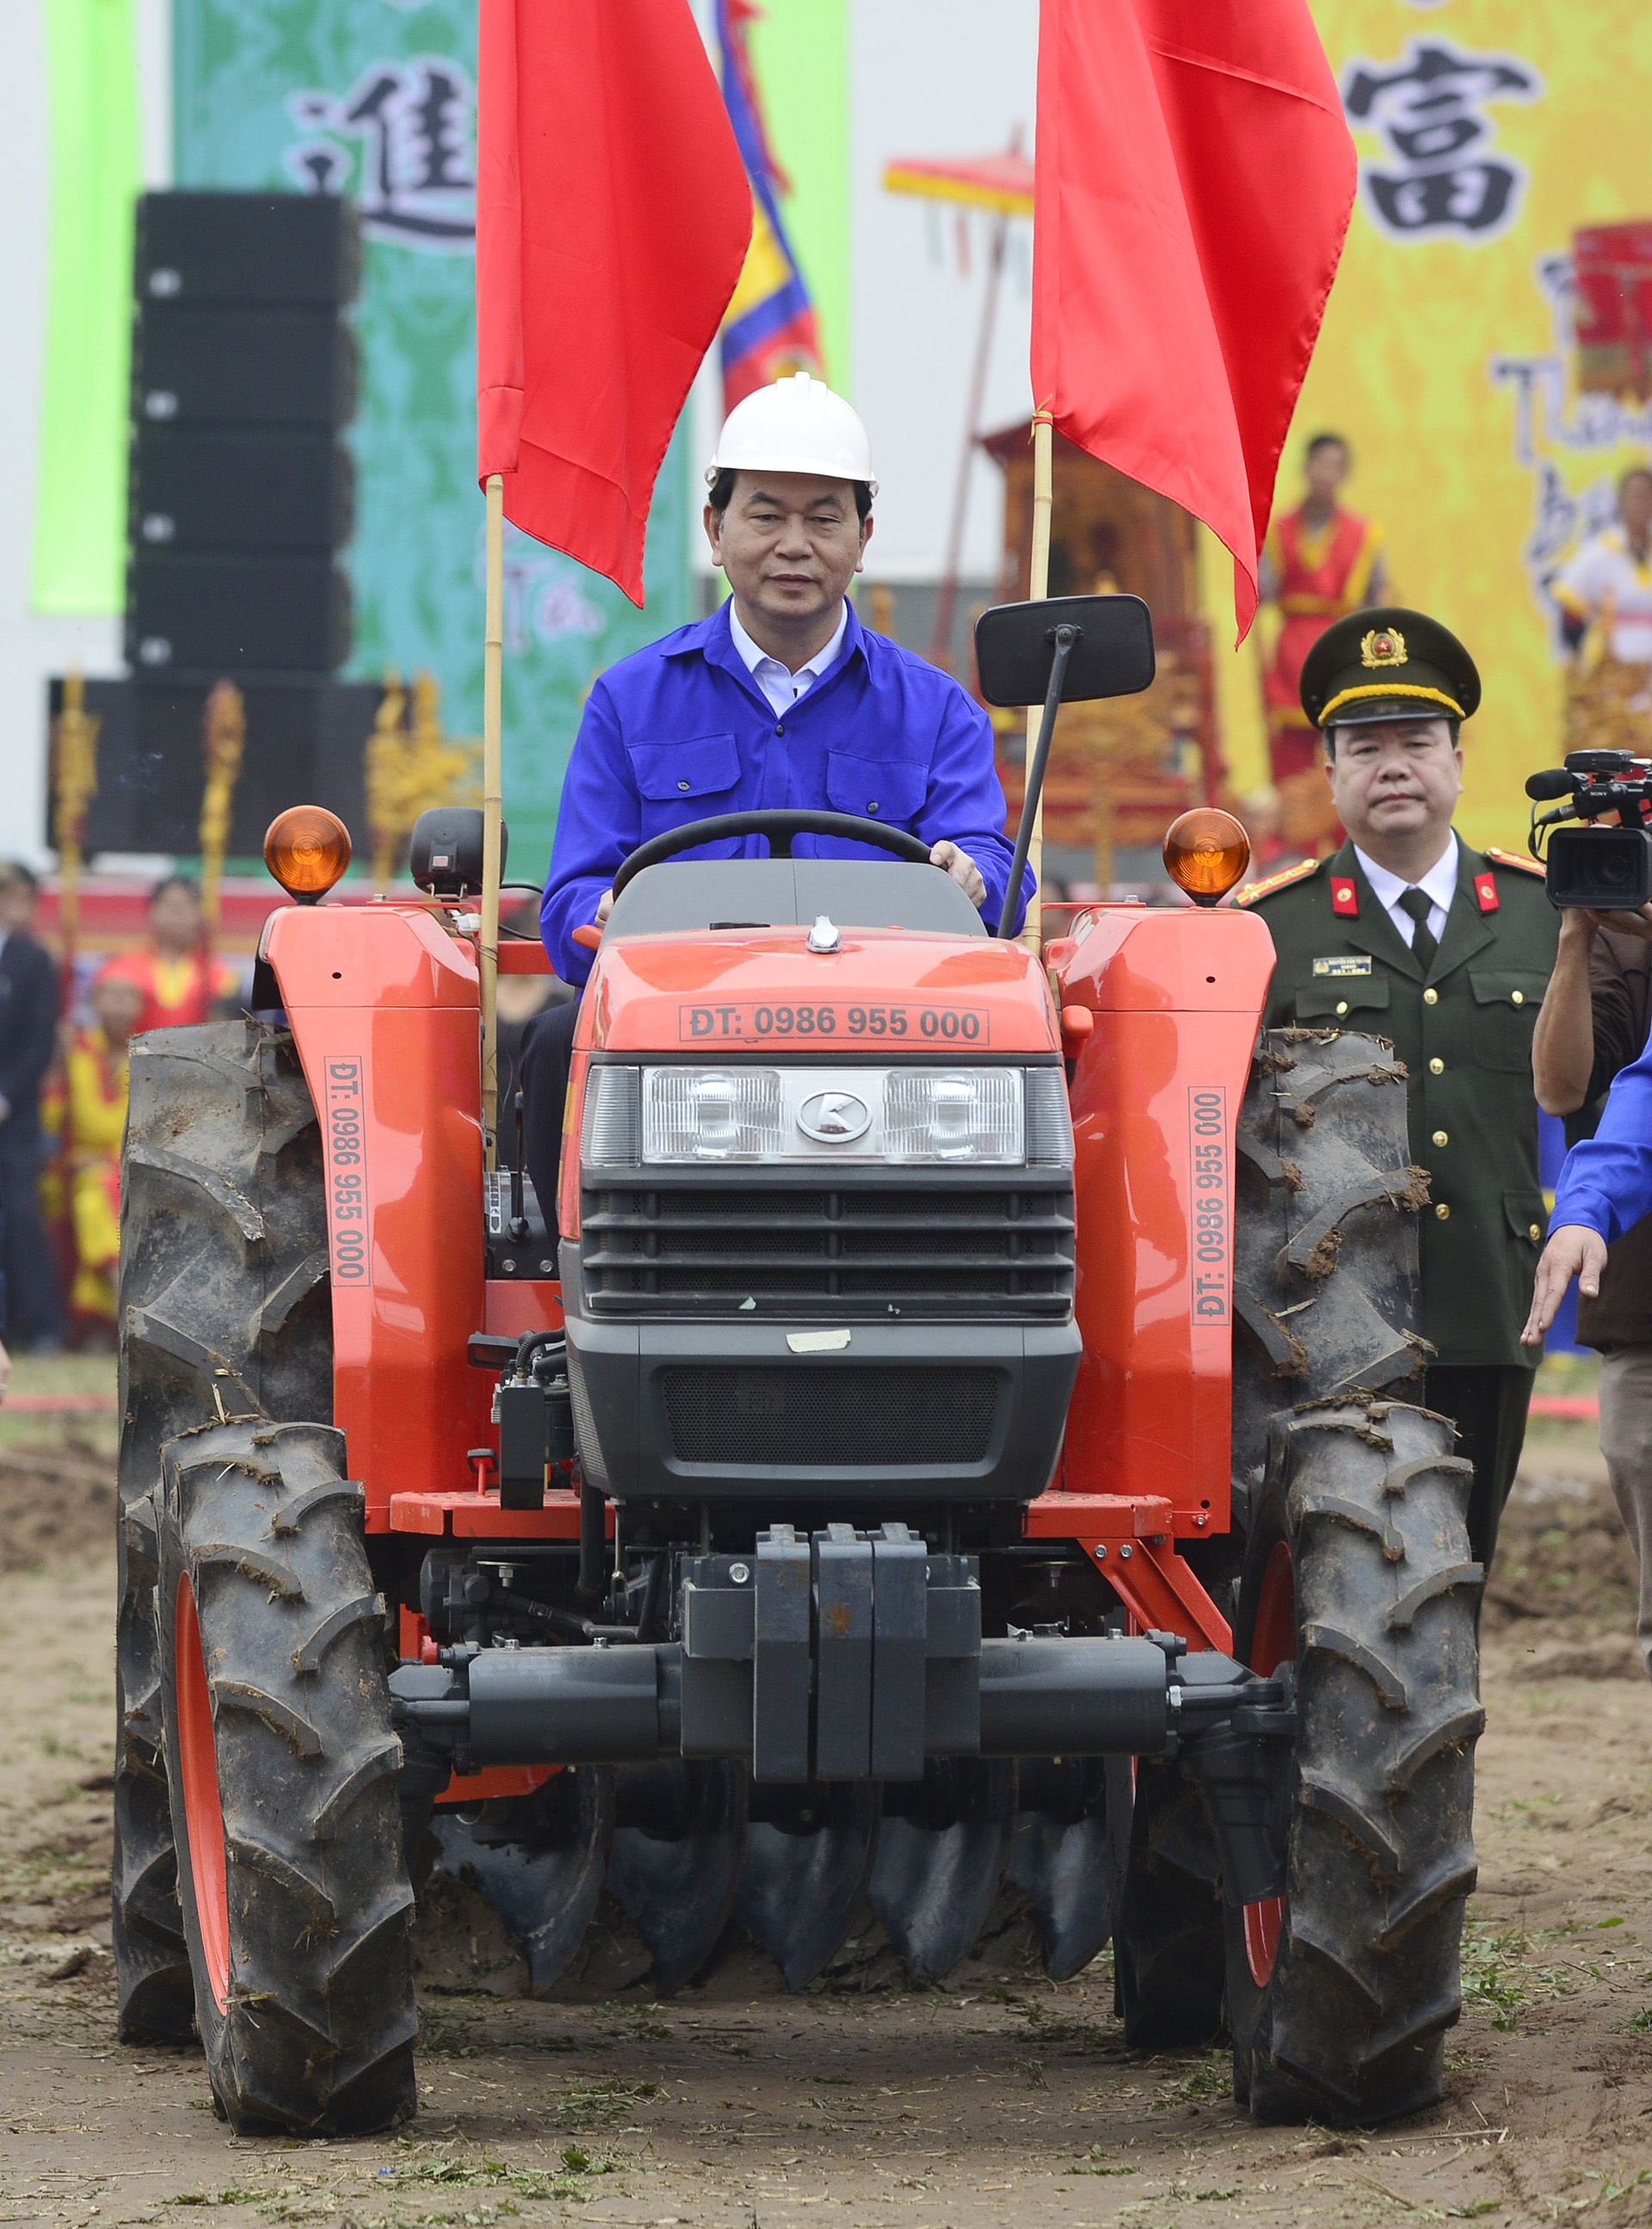 Chủ tịch nước lái máy cày ở lễ hội Tịch Điền - Ảnh & Video - ZNEWS.VN